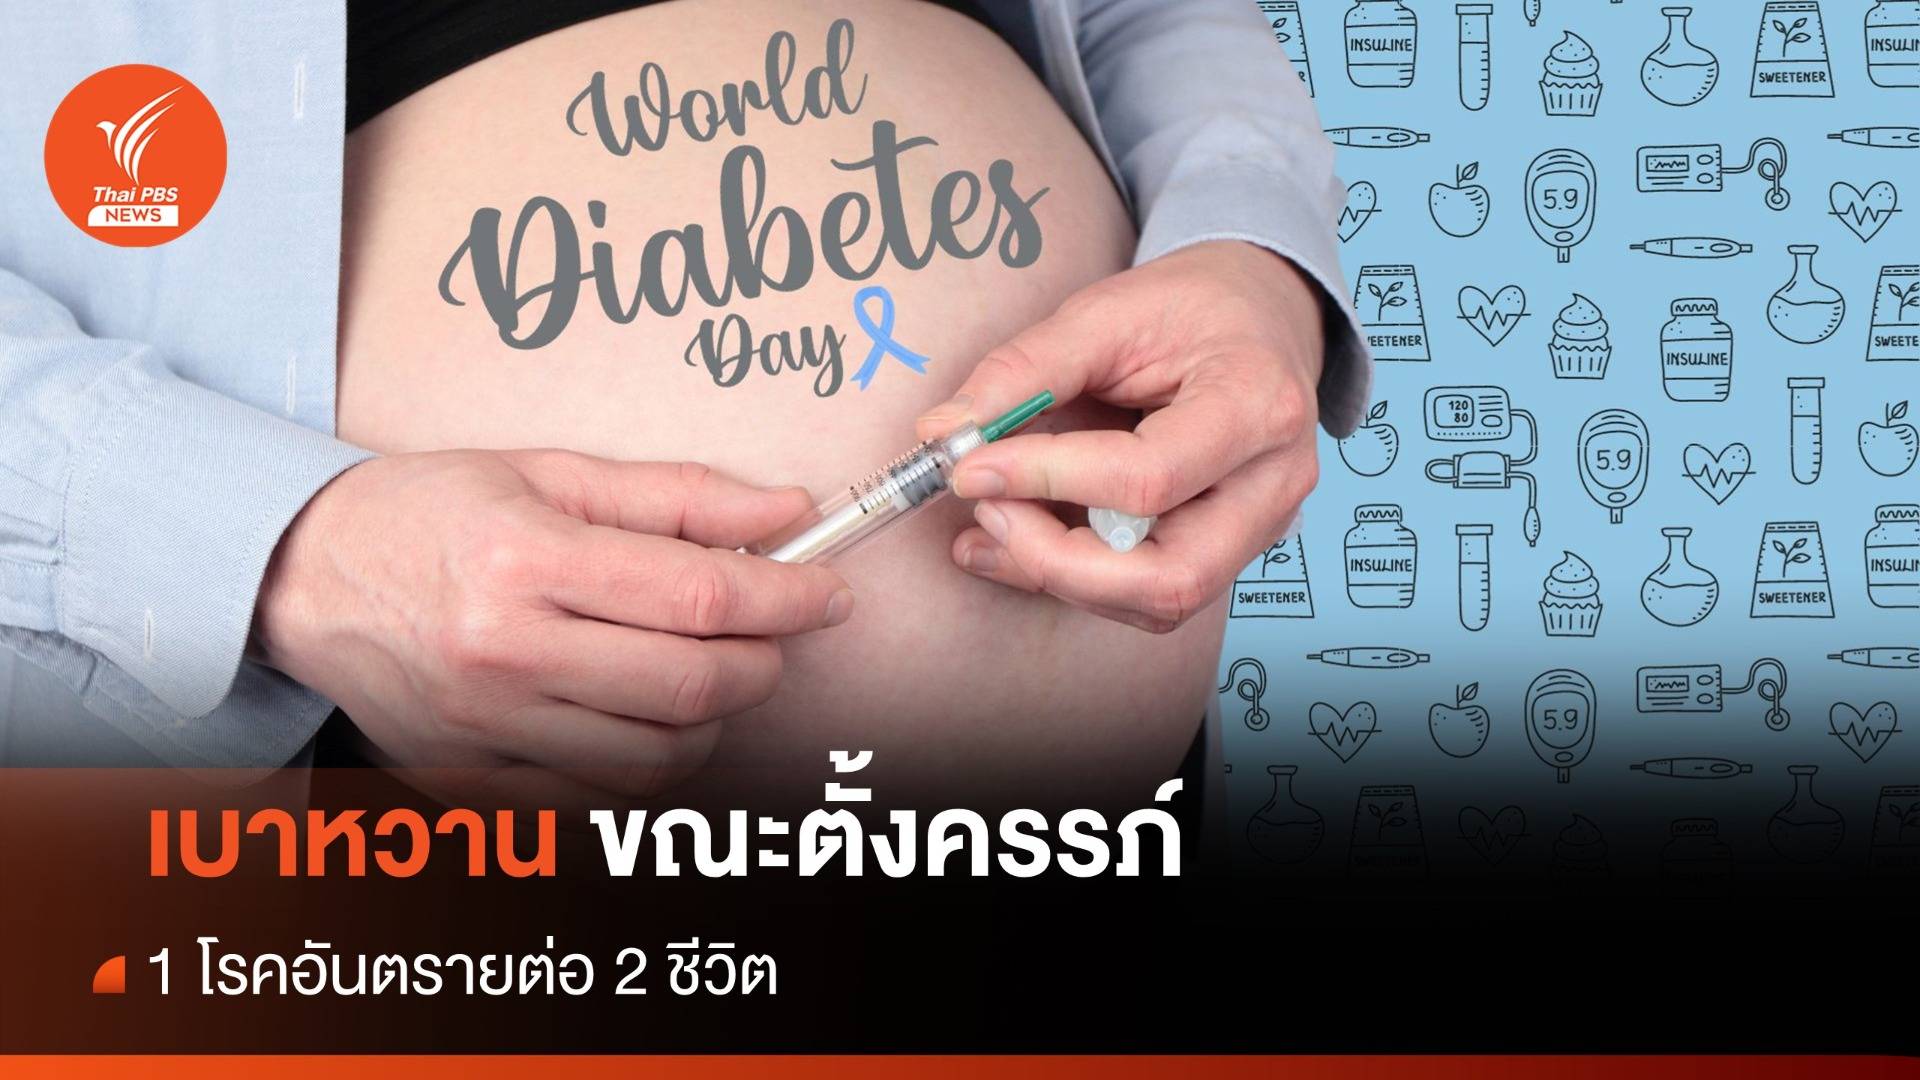 วันเบาหวานโลก รู้จัก "เบาหวานขณะตั้งครรภ์" 1 โรคอันตรายของ 2 ชีวิต